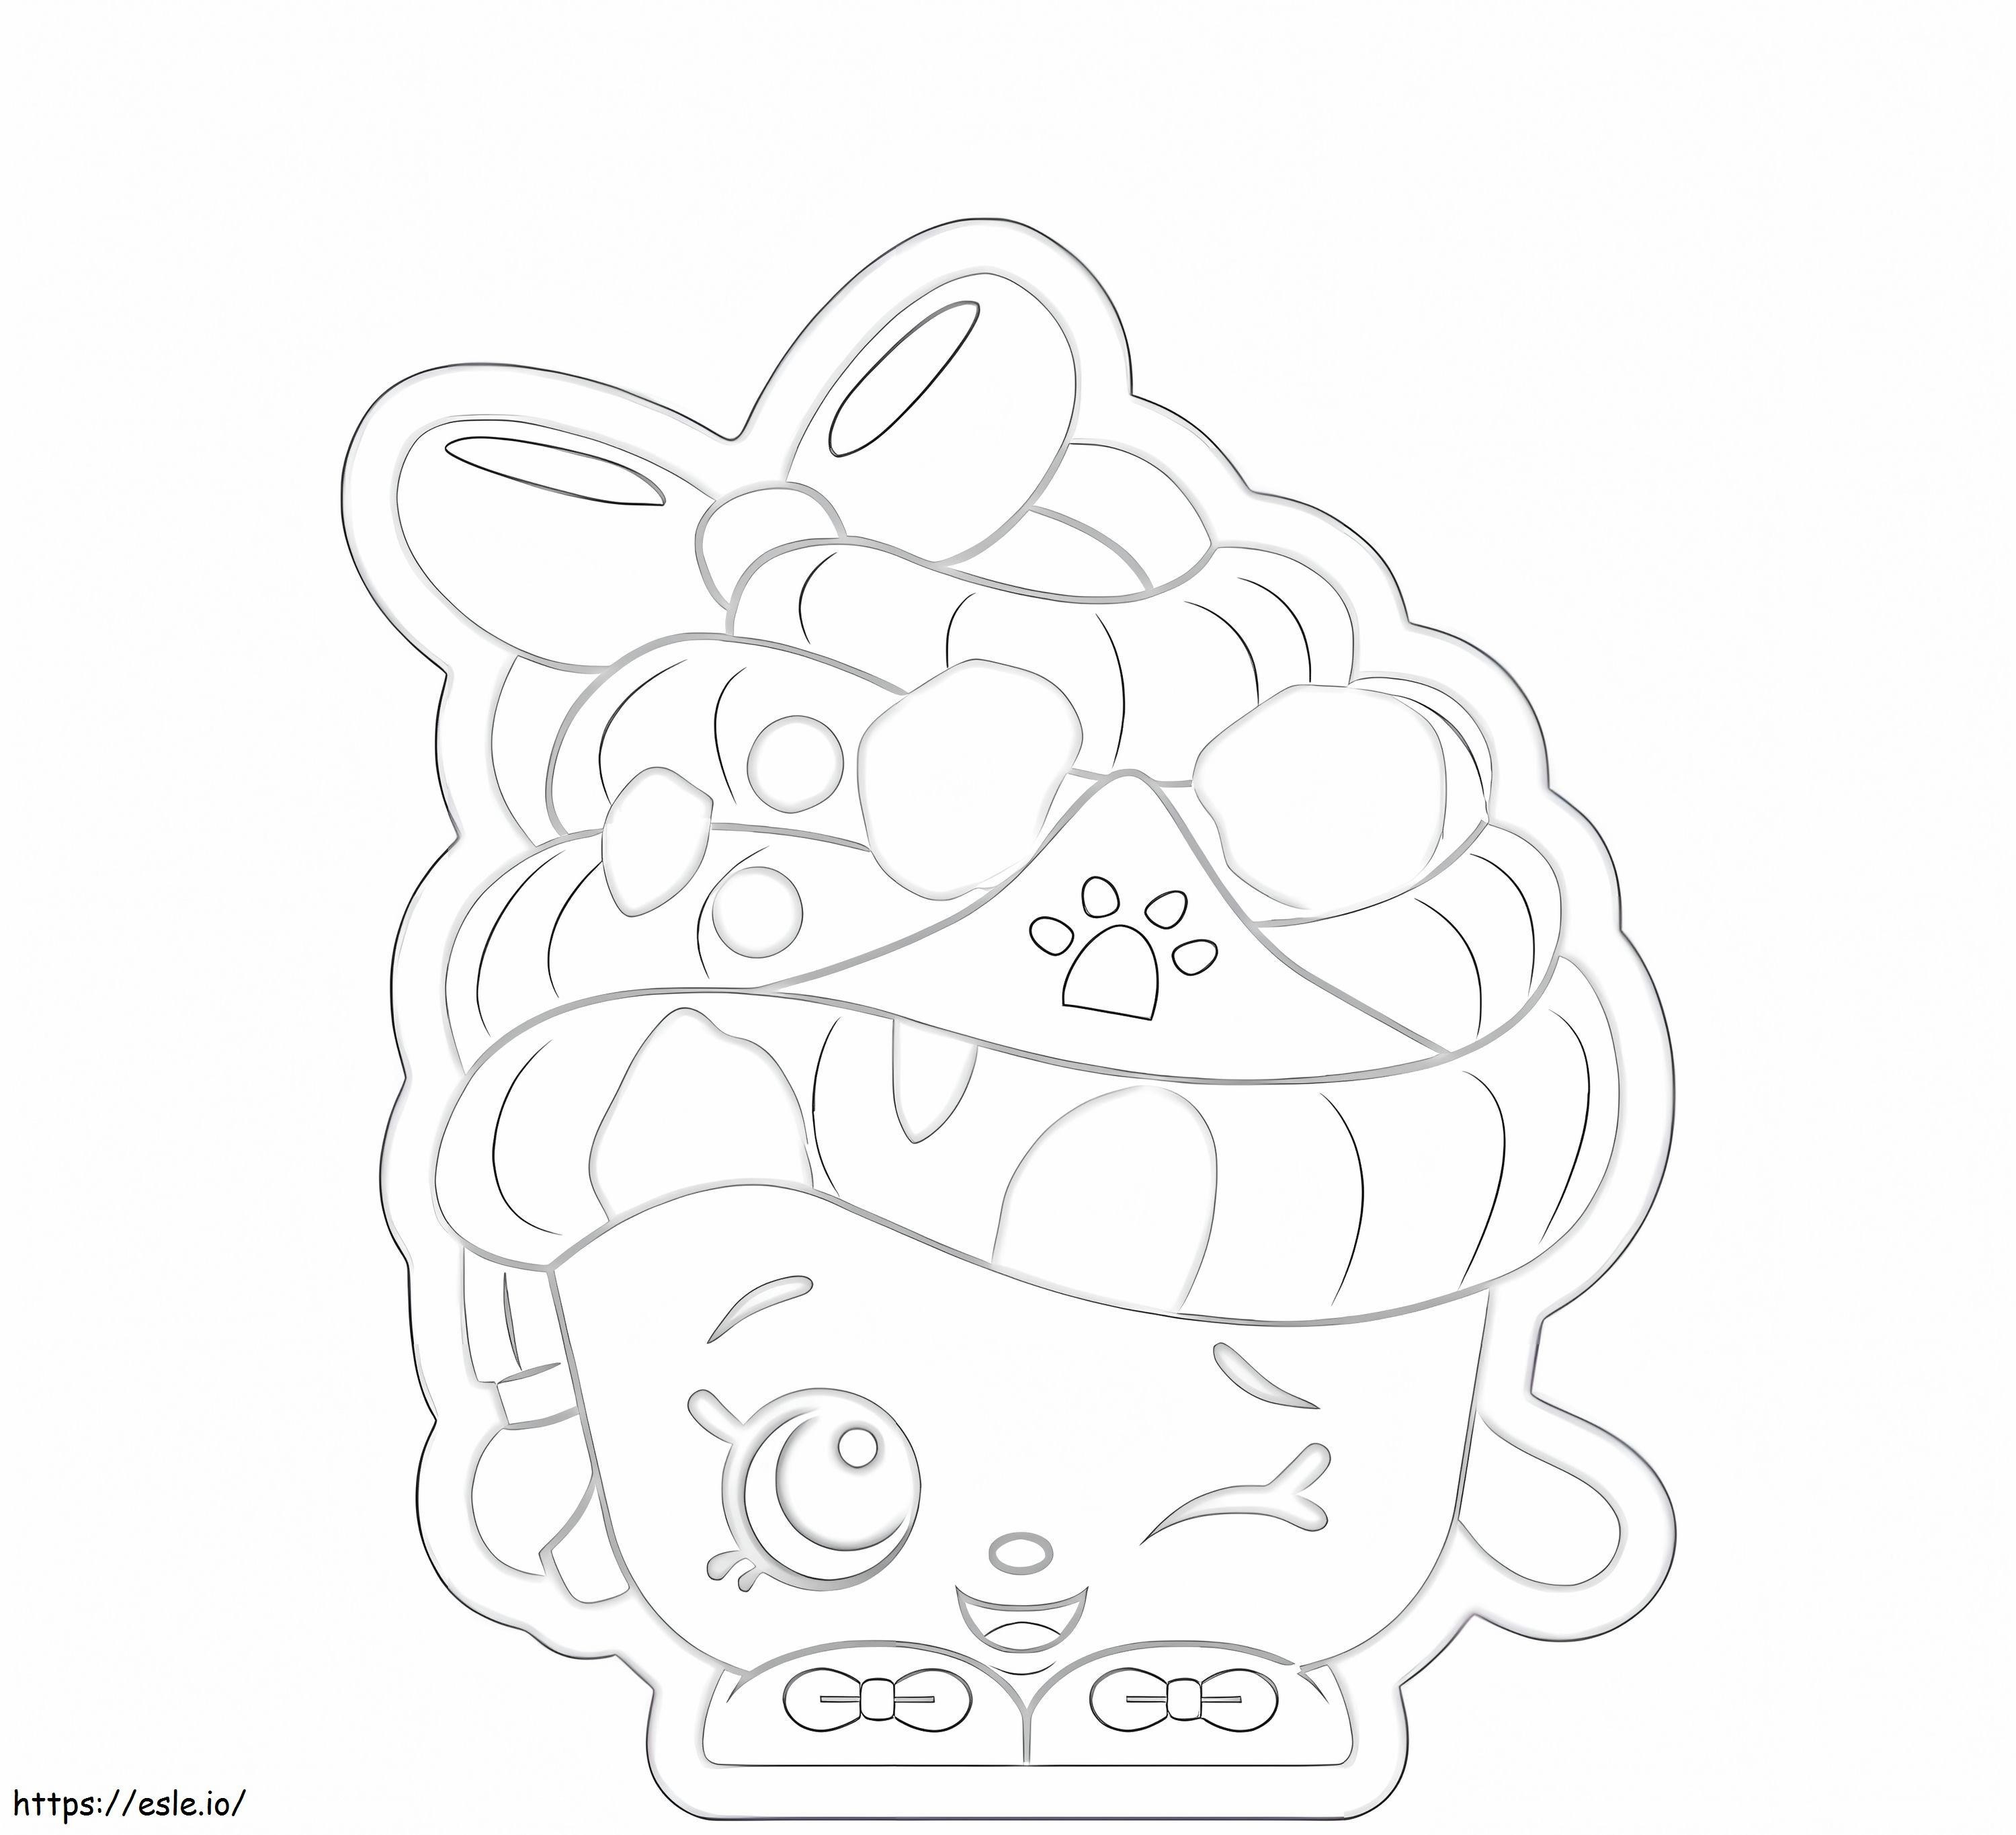 Coloriage Cupcake Reine Shopkin à imprimer dessin